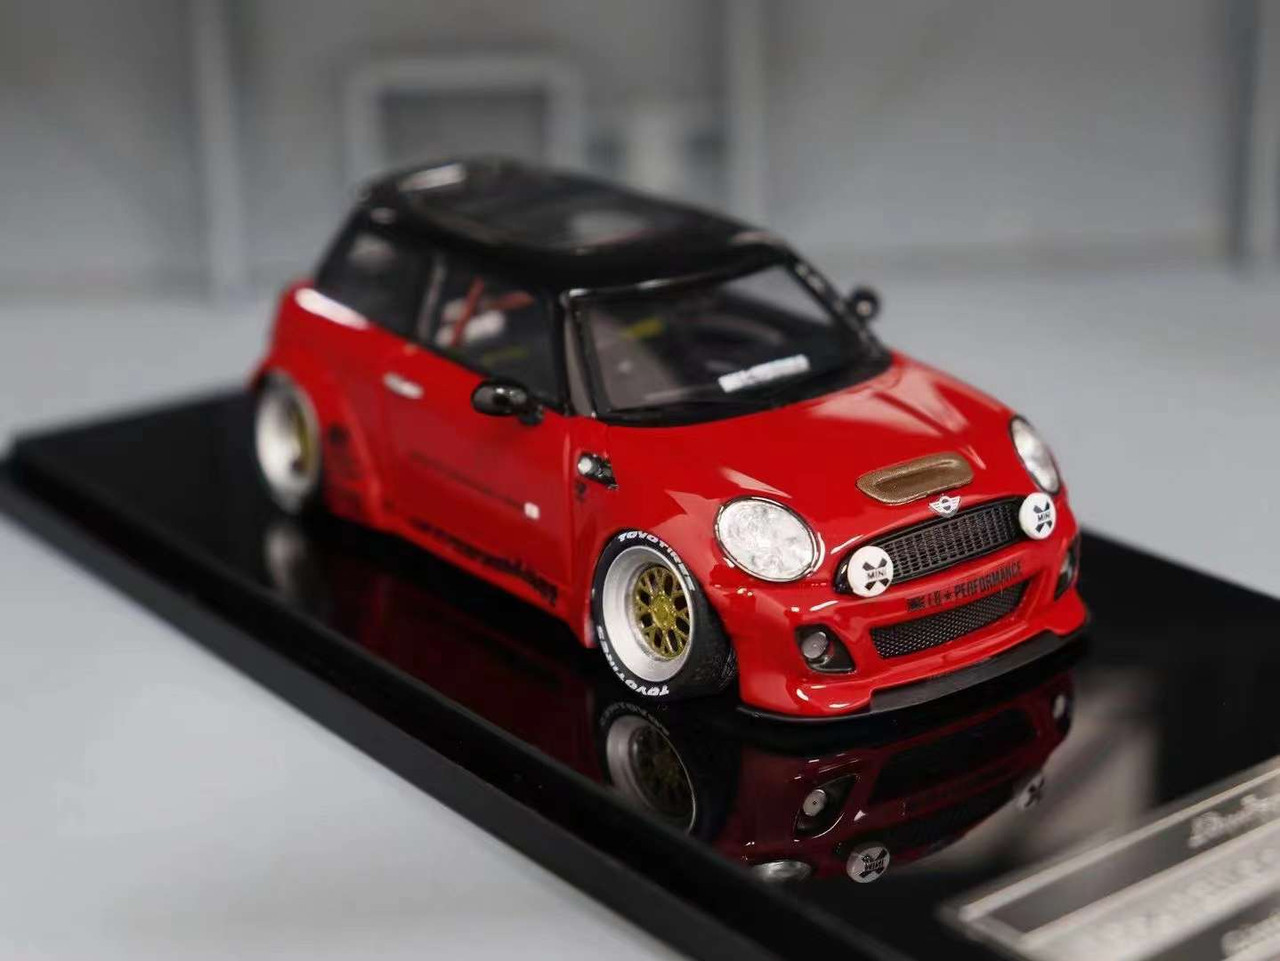 1/43 Endup Models Mini Cooper Liberty Walk LB Performance (Red) Car Model Limited 50 Pieces